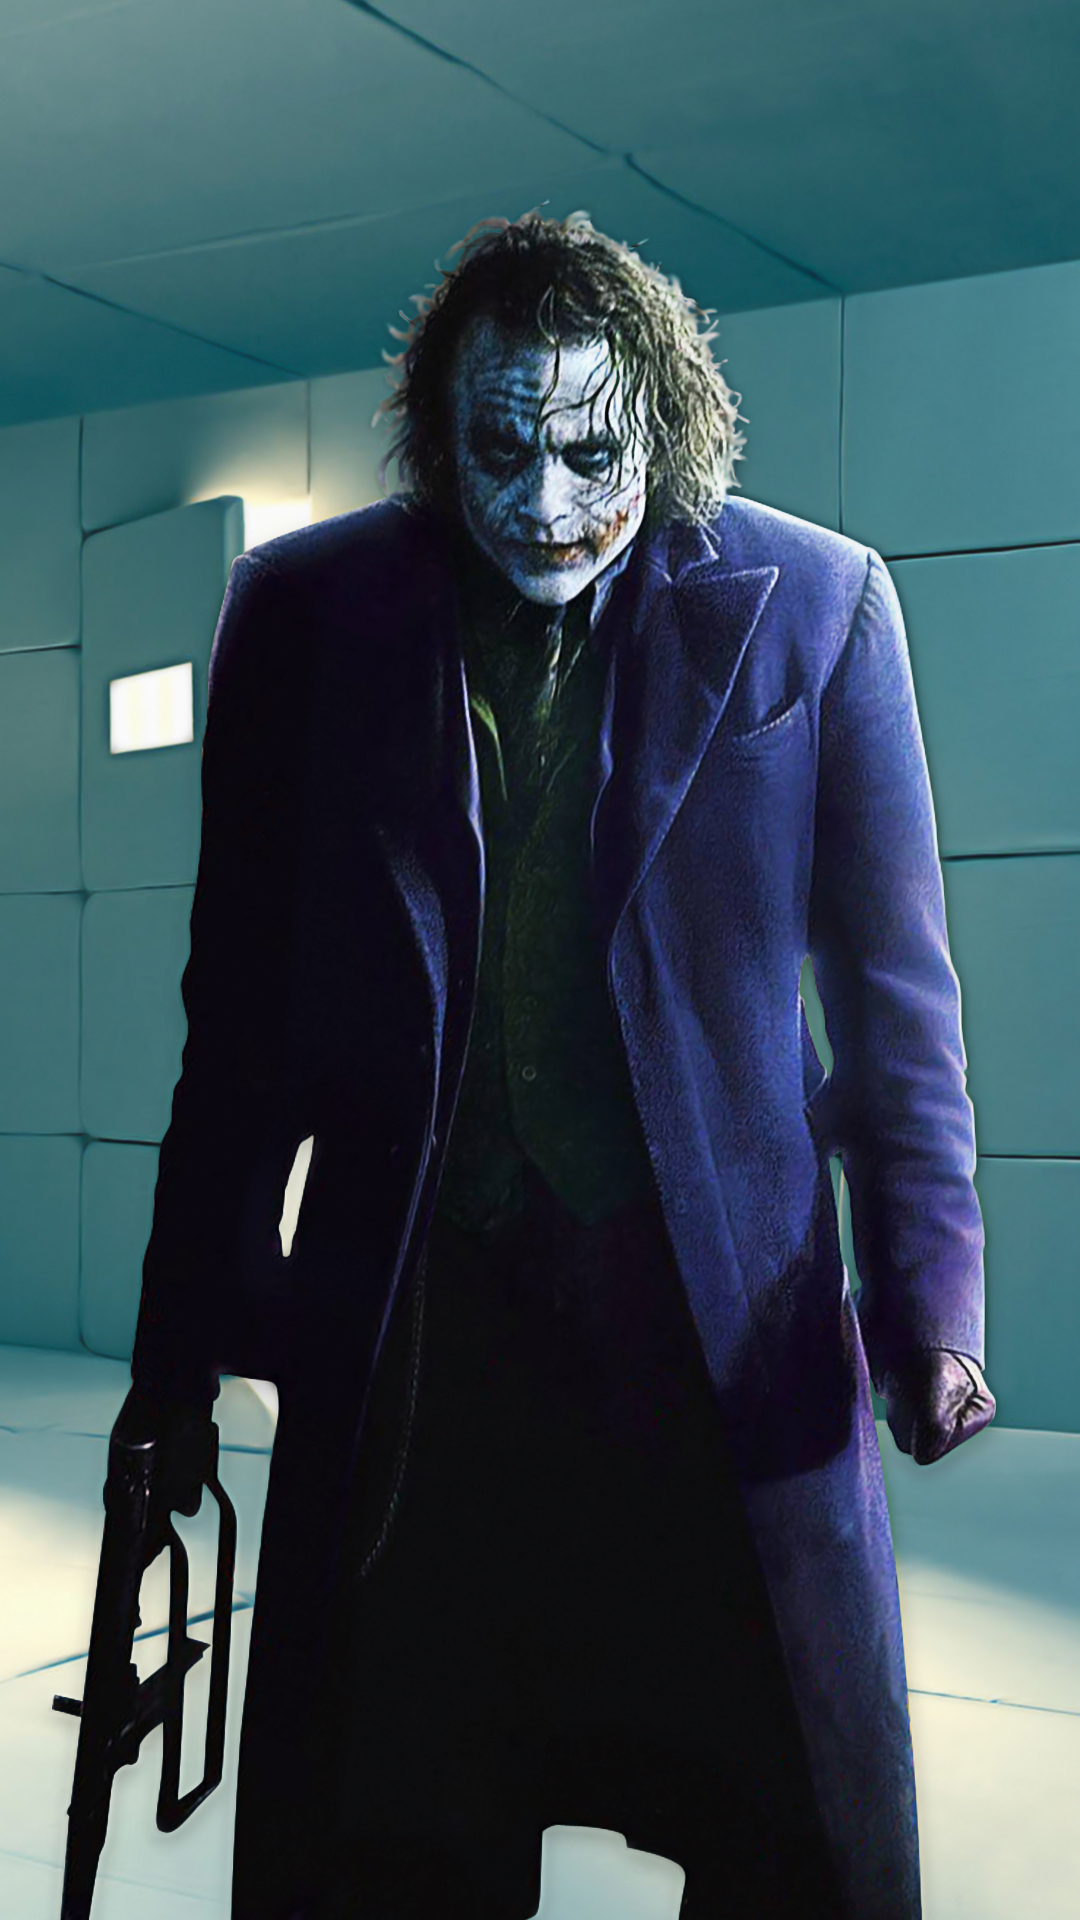 1080x1920 The Joker iPhone Wallpaper